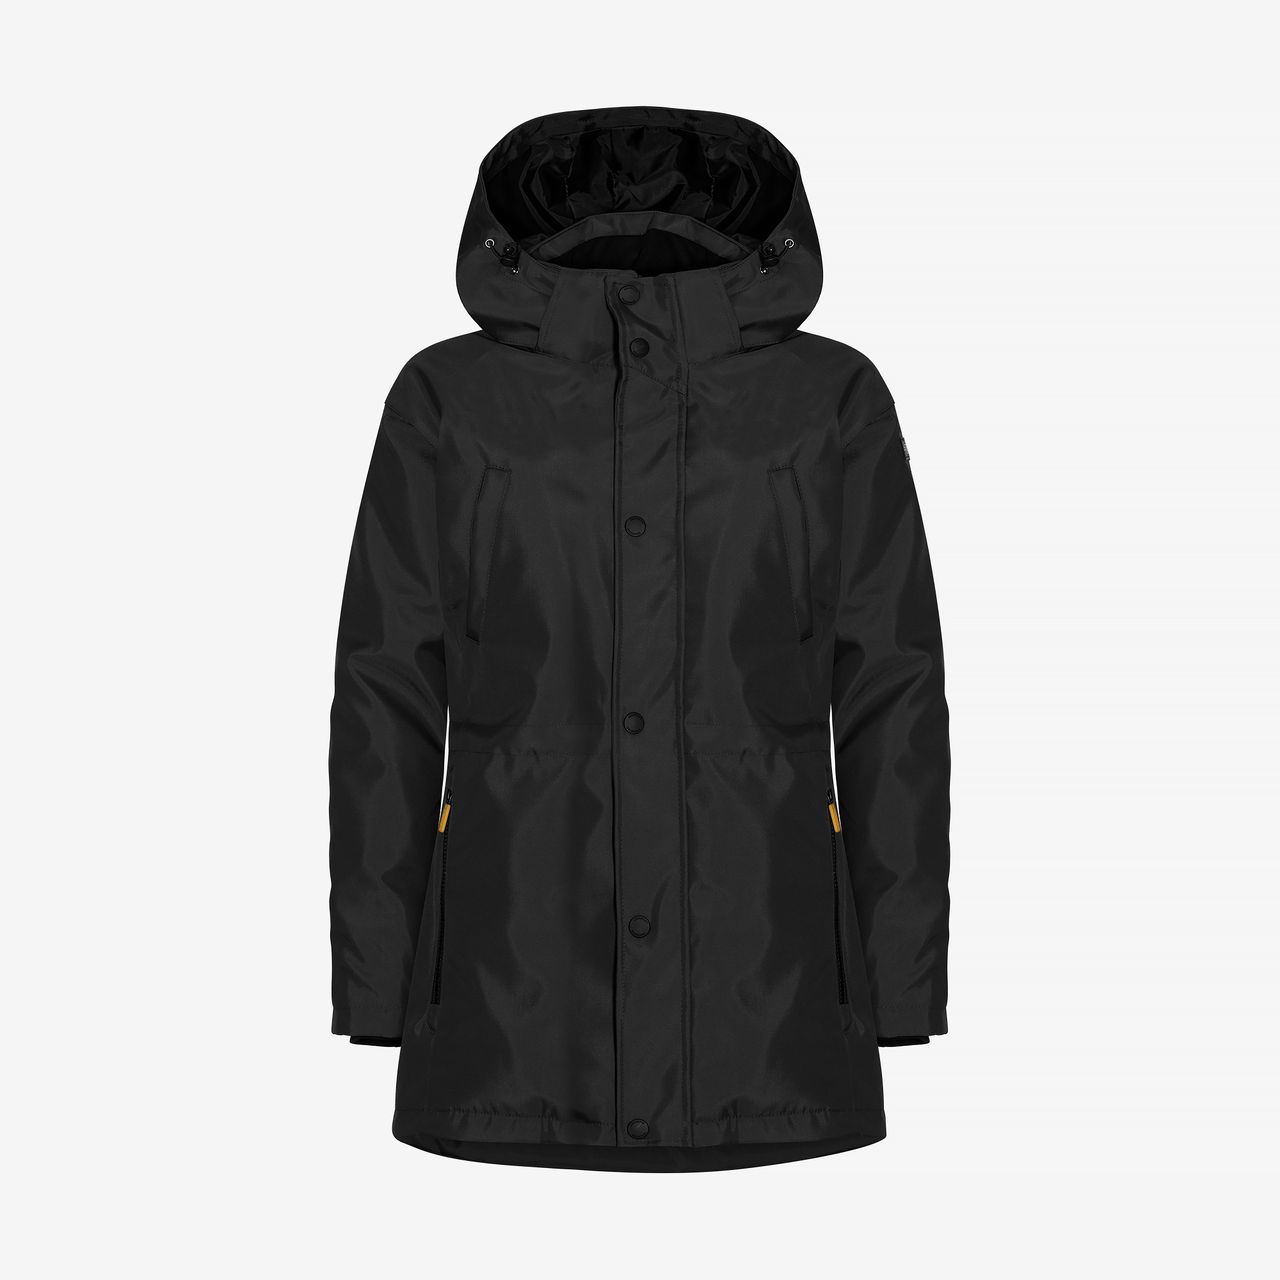 Winter jacket Black Ladies